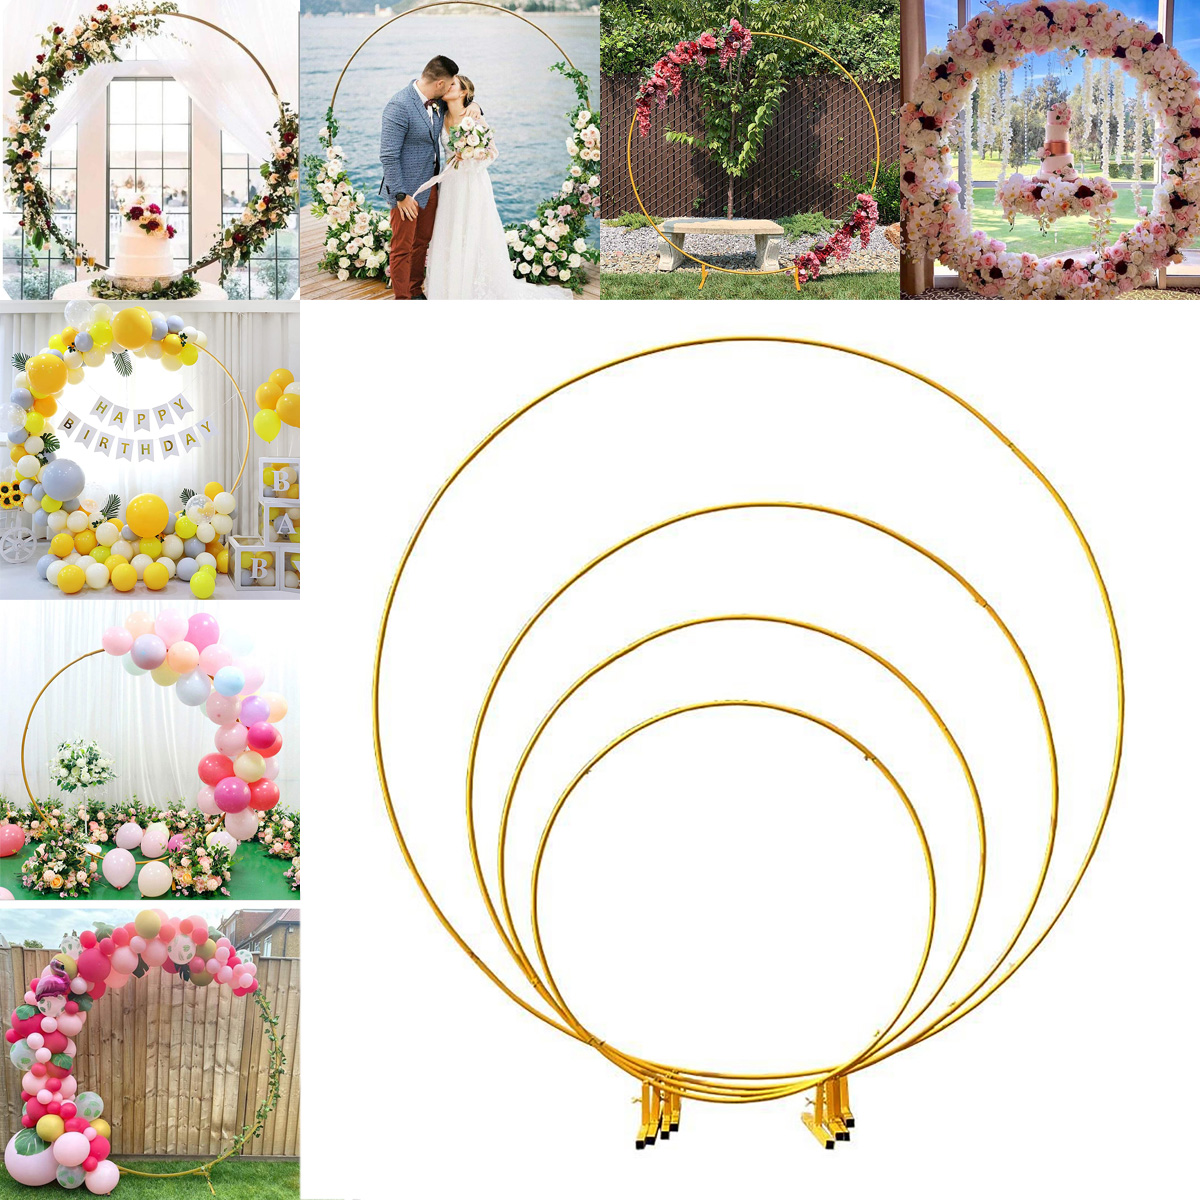 112151824M-Gold-Round-Balloon-Arch-Metal-Wedding-Arch-For-Garden-Yard-Wedding-Brithday-Party-1938091-1